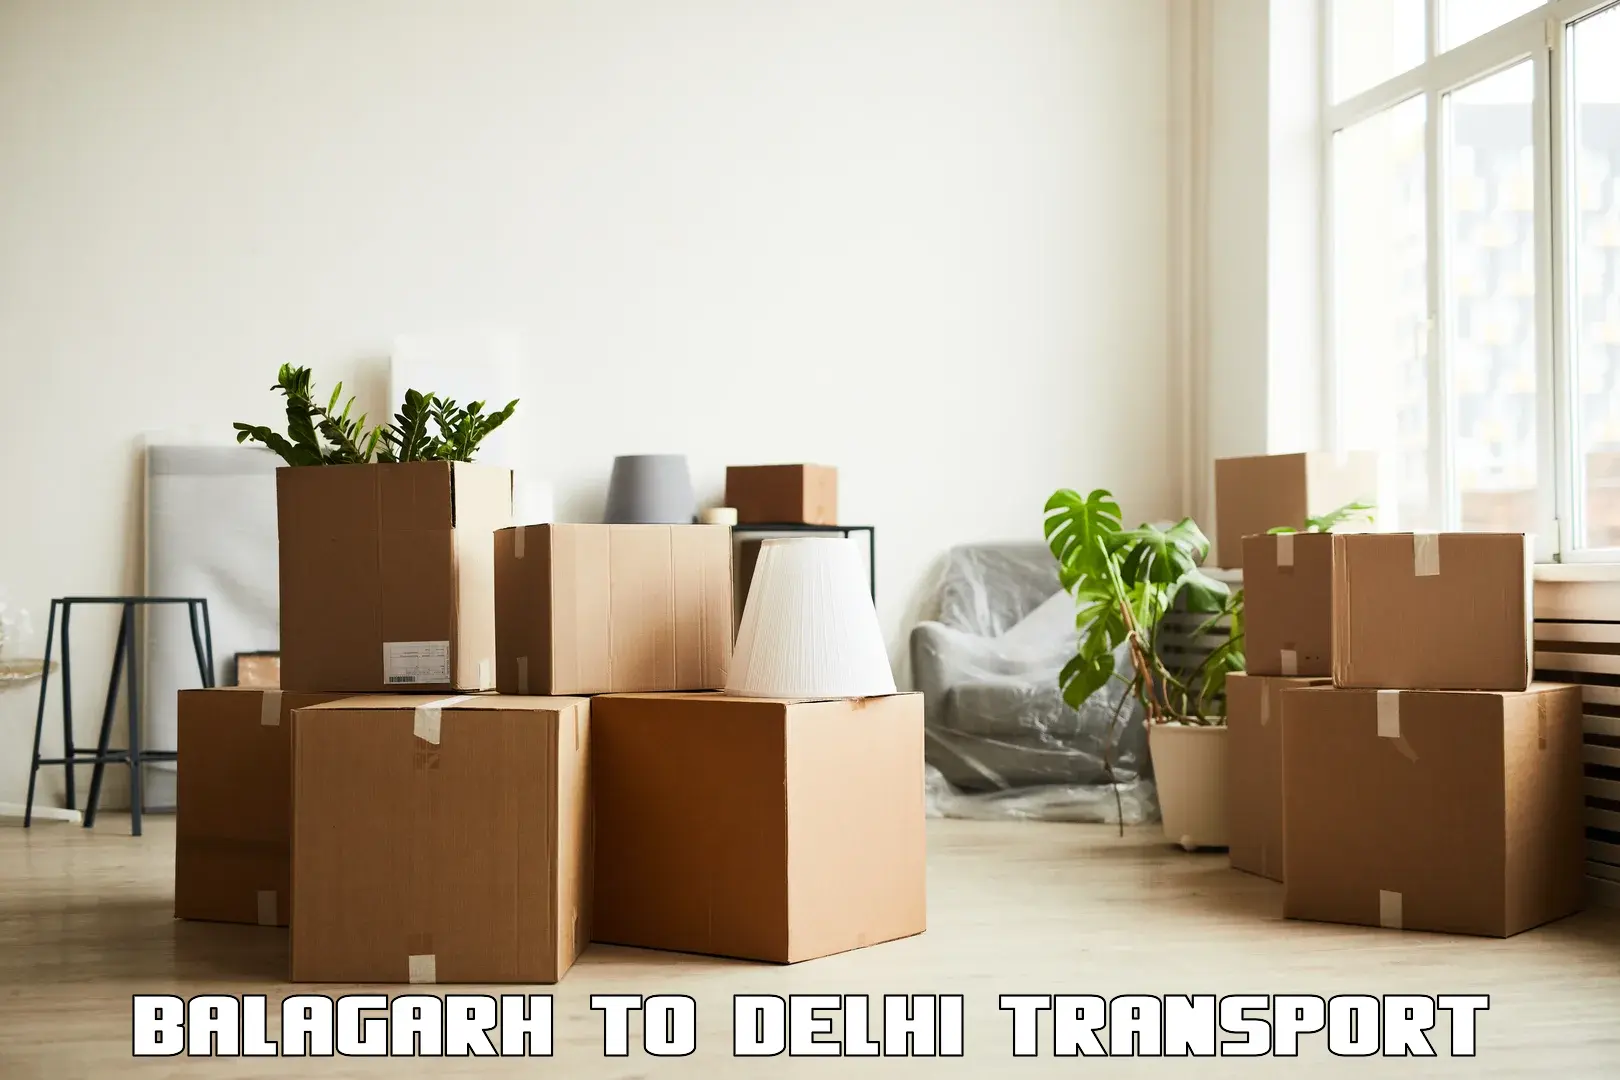 Online transport service Balagarh to IIT Delhi